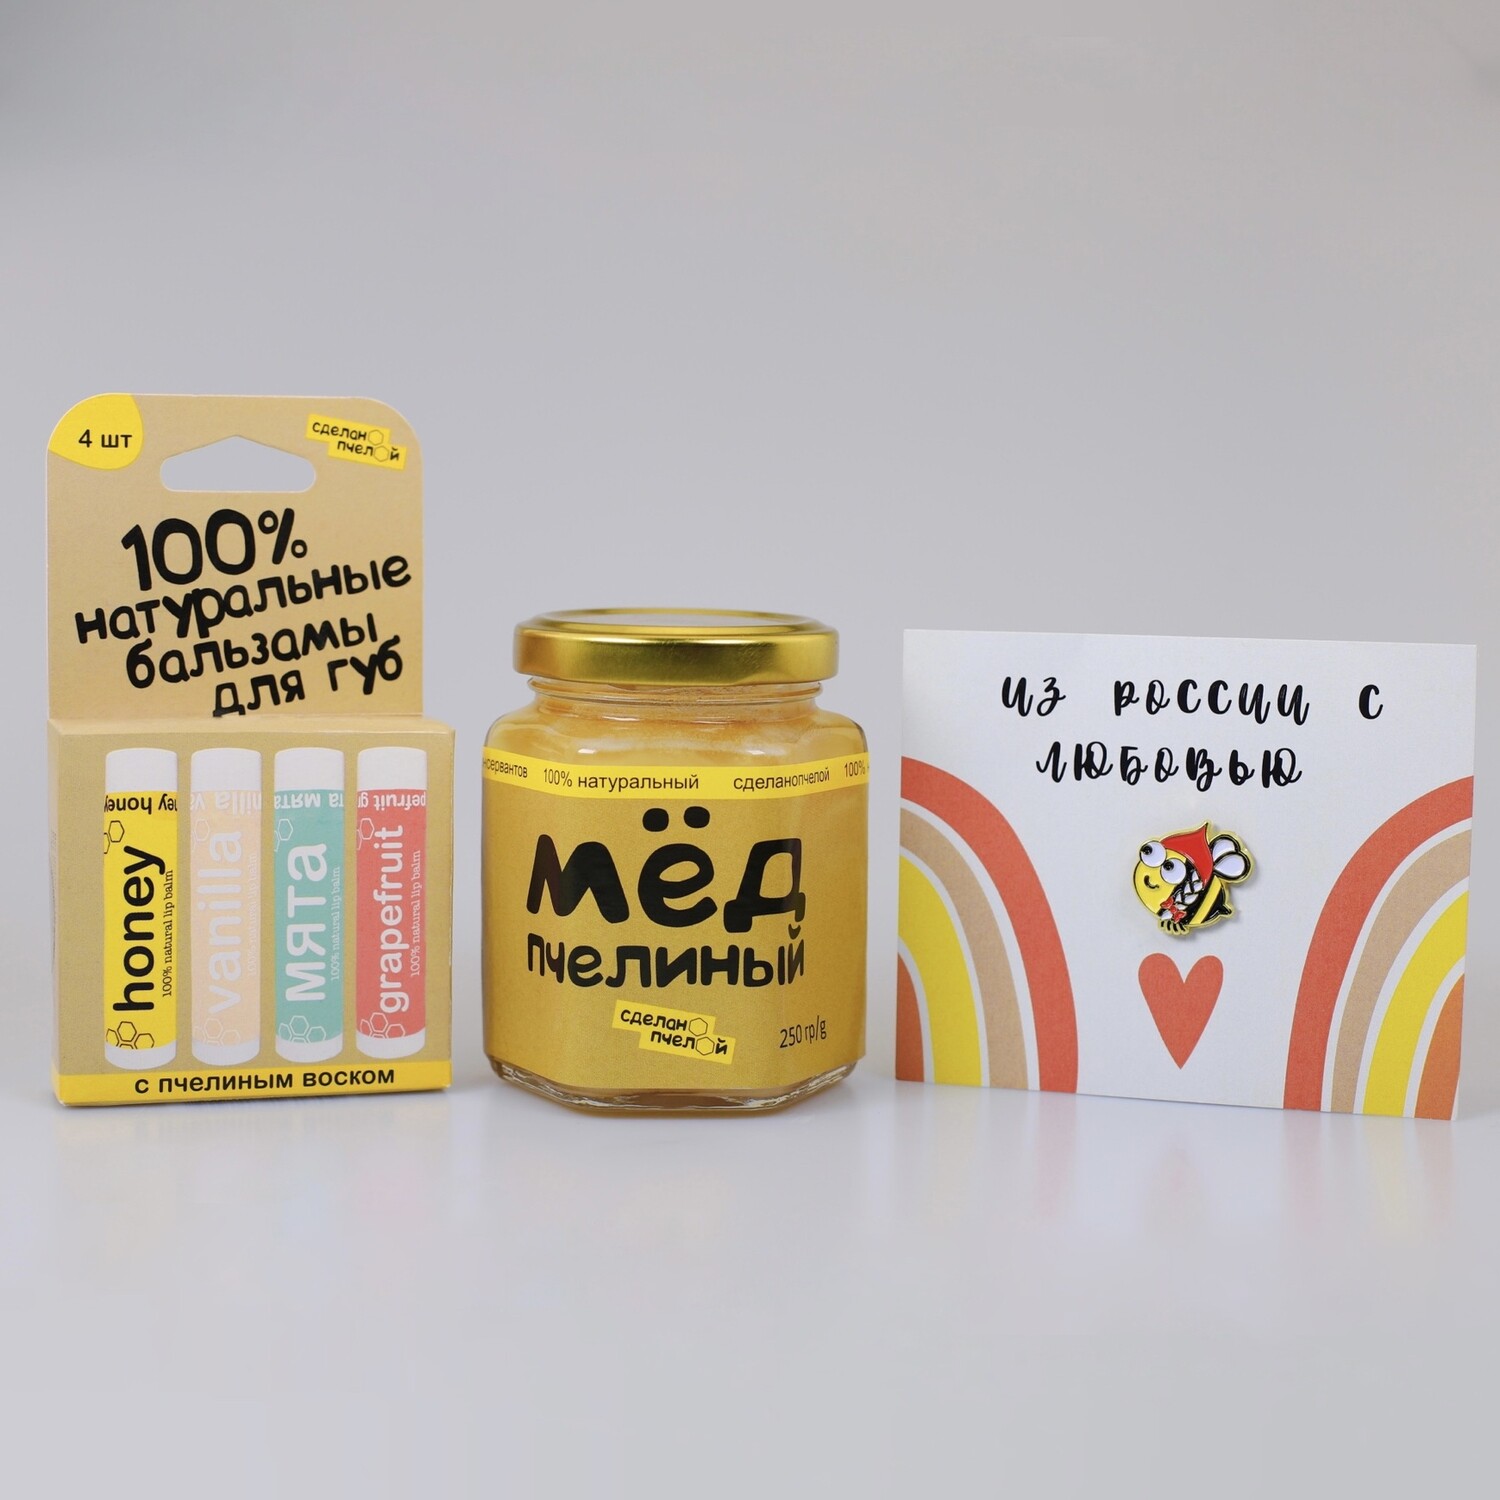 Подарочный набор "Honey, Vanilla, Мята, Грейпфрут"" + брошь + открытка + мёд в боксе "сделанопчелой"